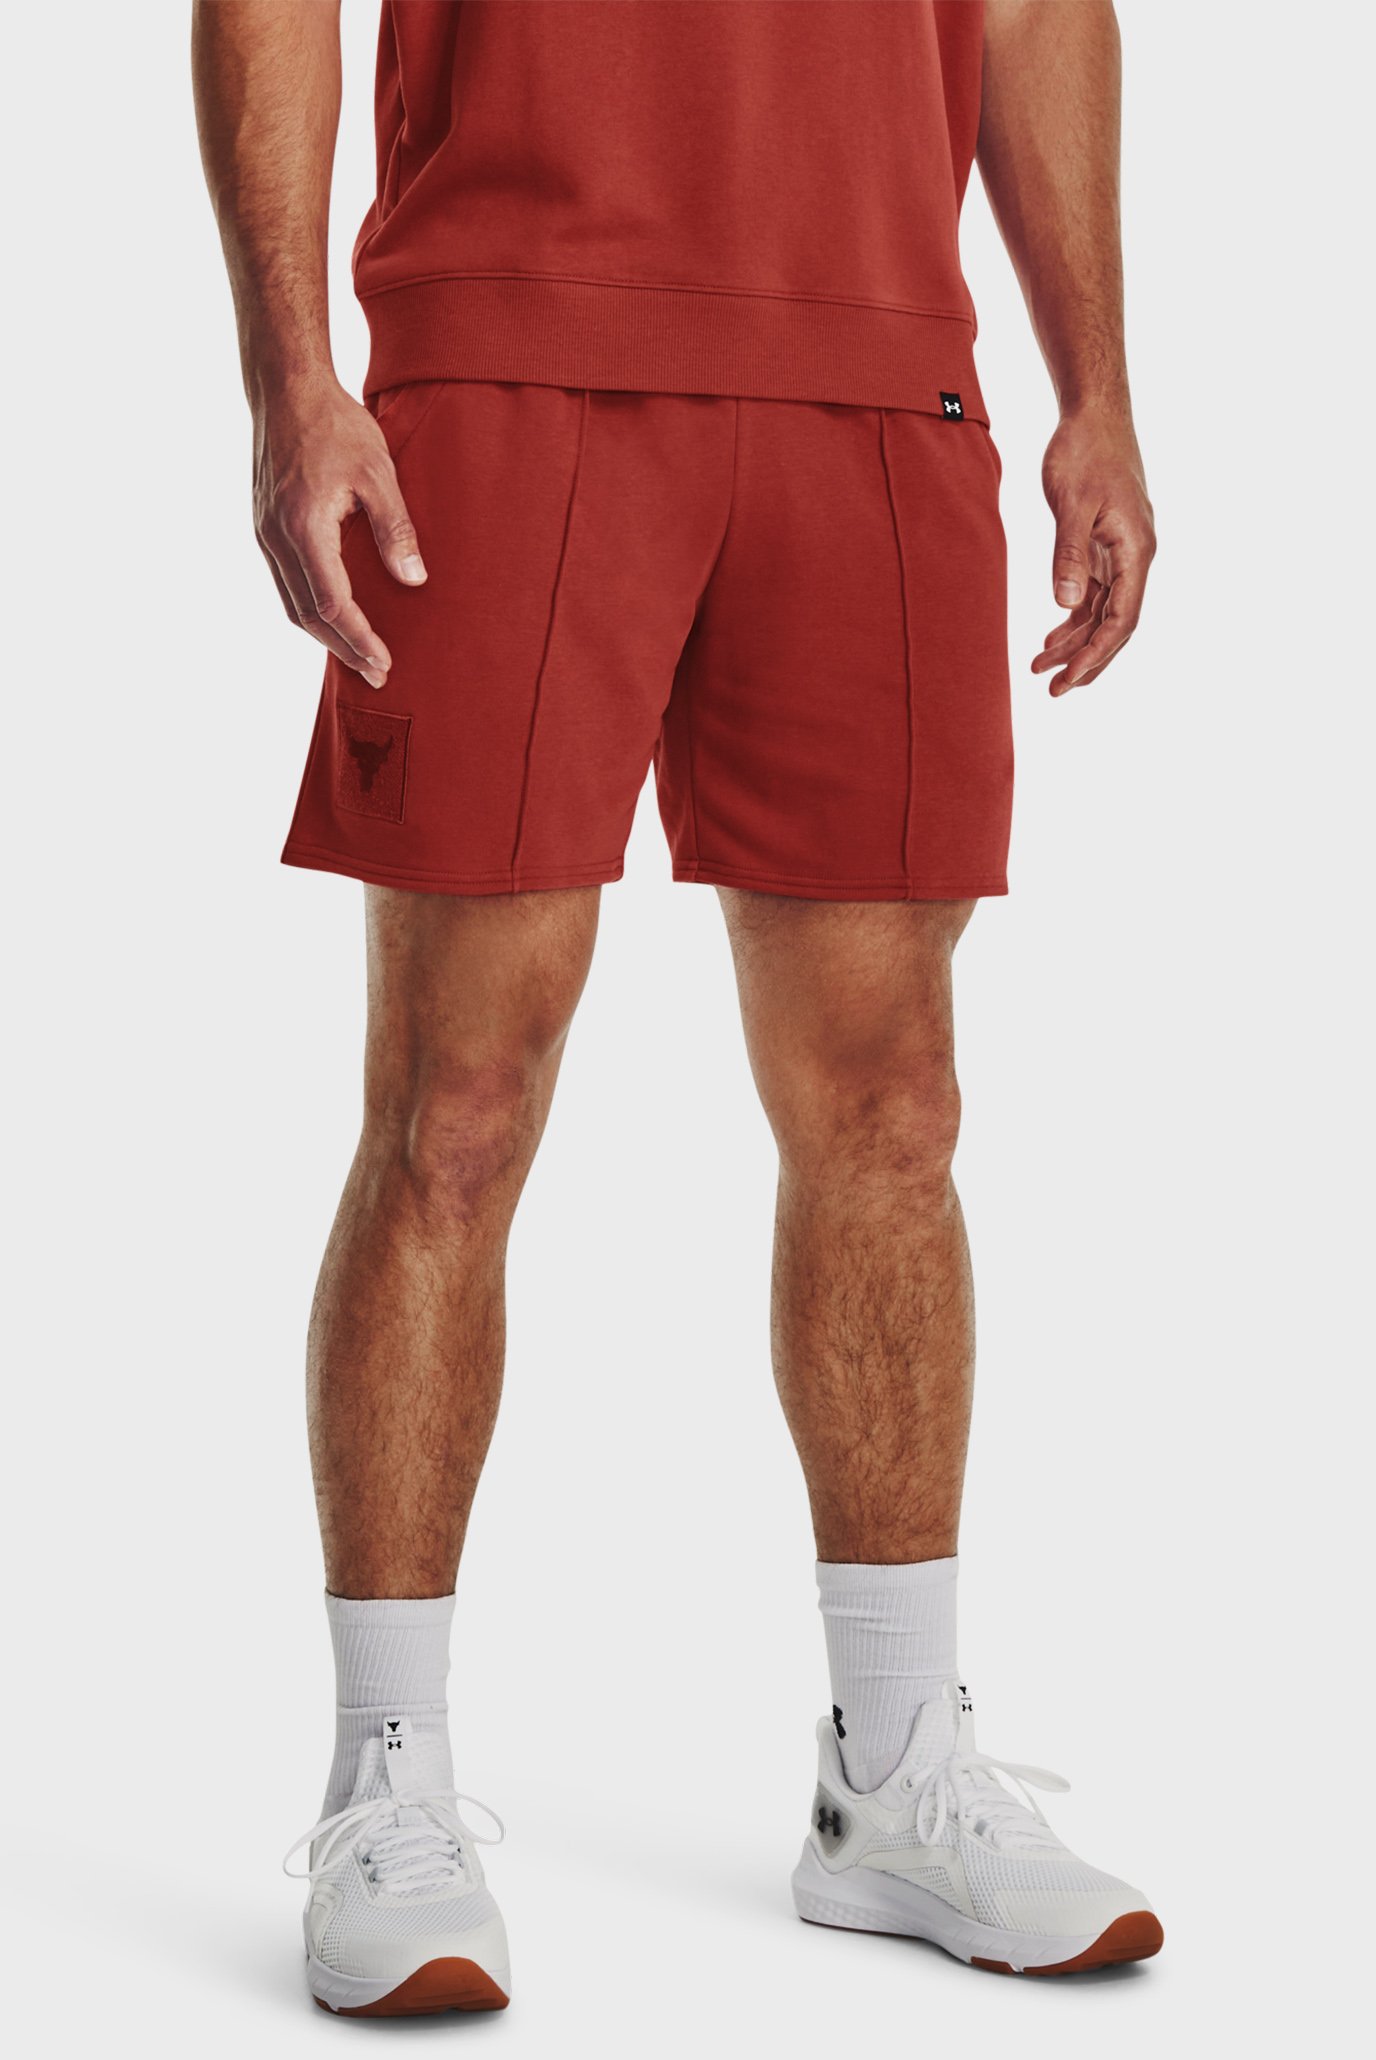 Чоловічі червоні шорти Pjt Rock Terry Gym Short 1